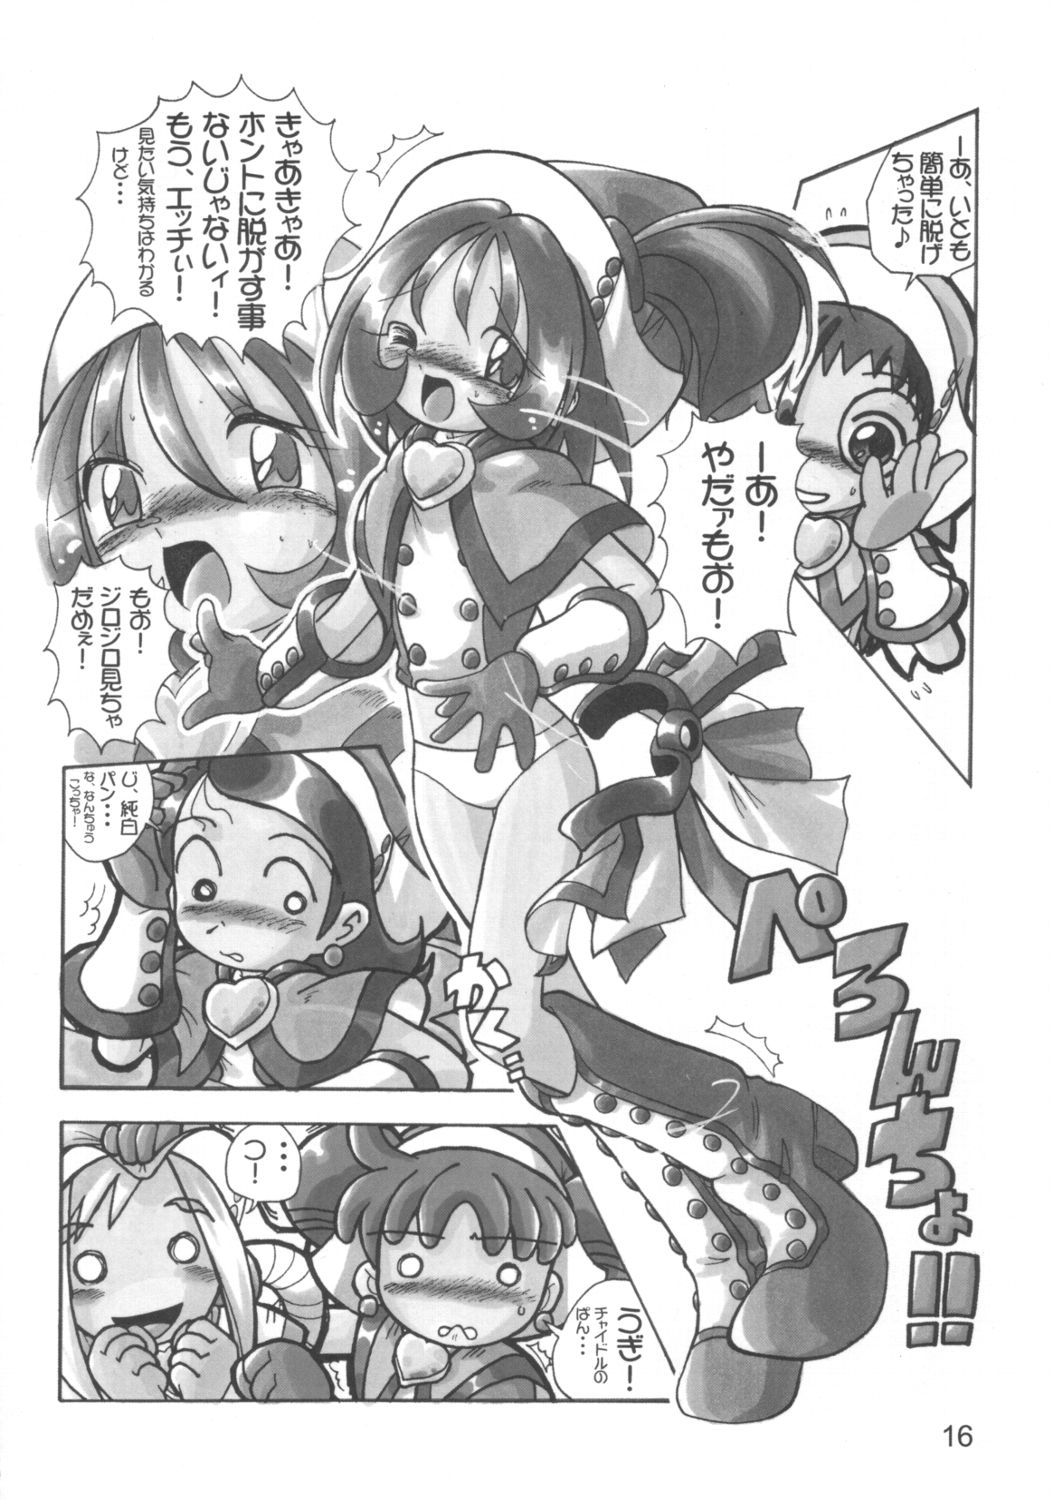 [RPG Company 2 (Various)] Lolita-Spirits Vol. 6 (Various) page 15 full